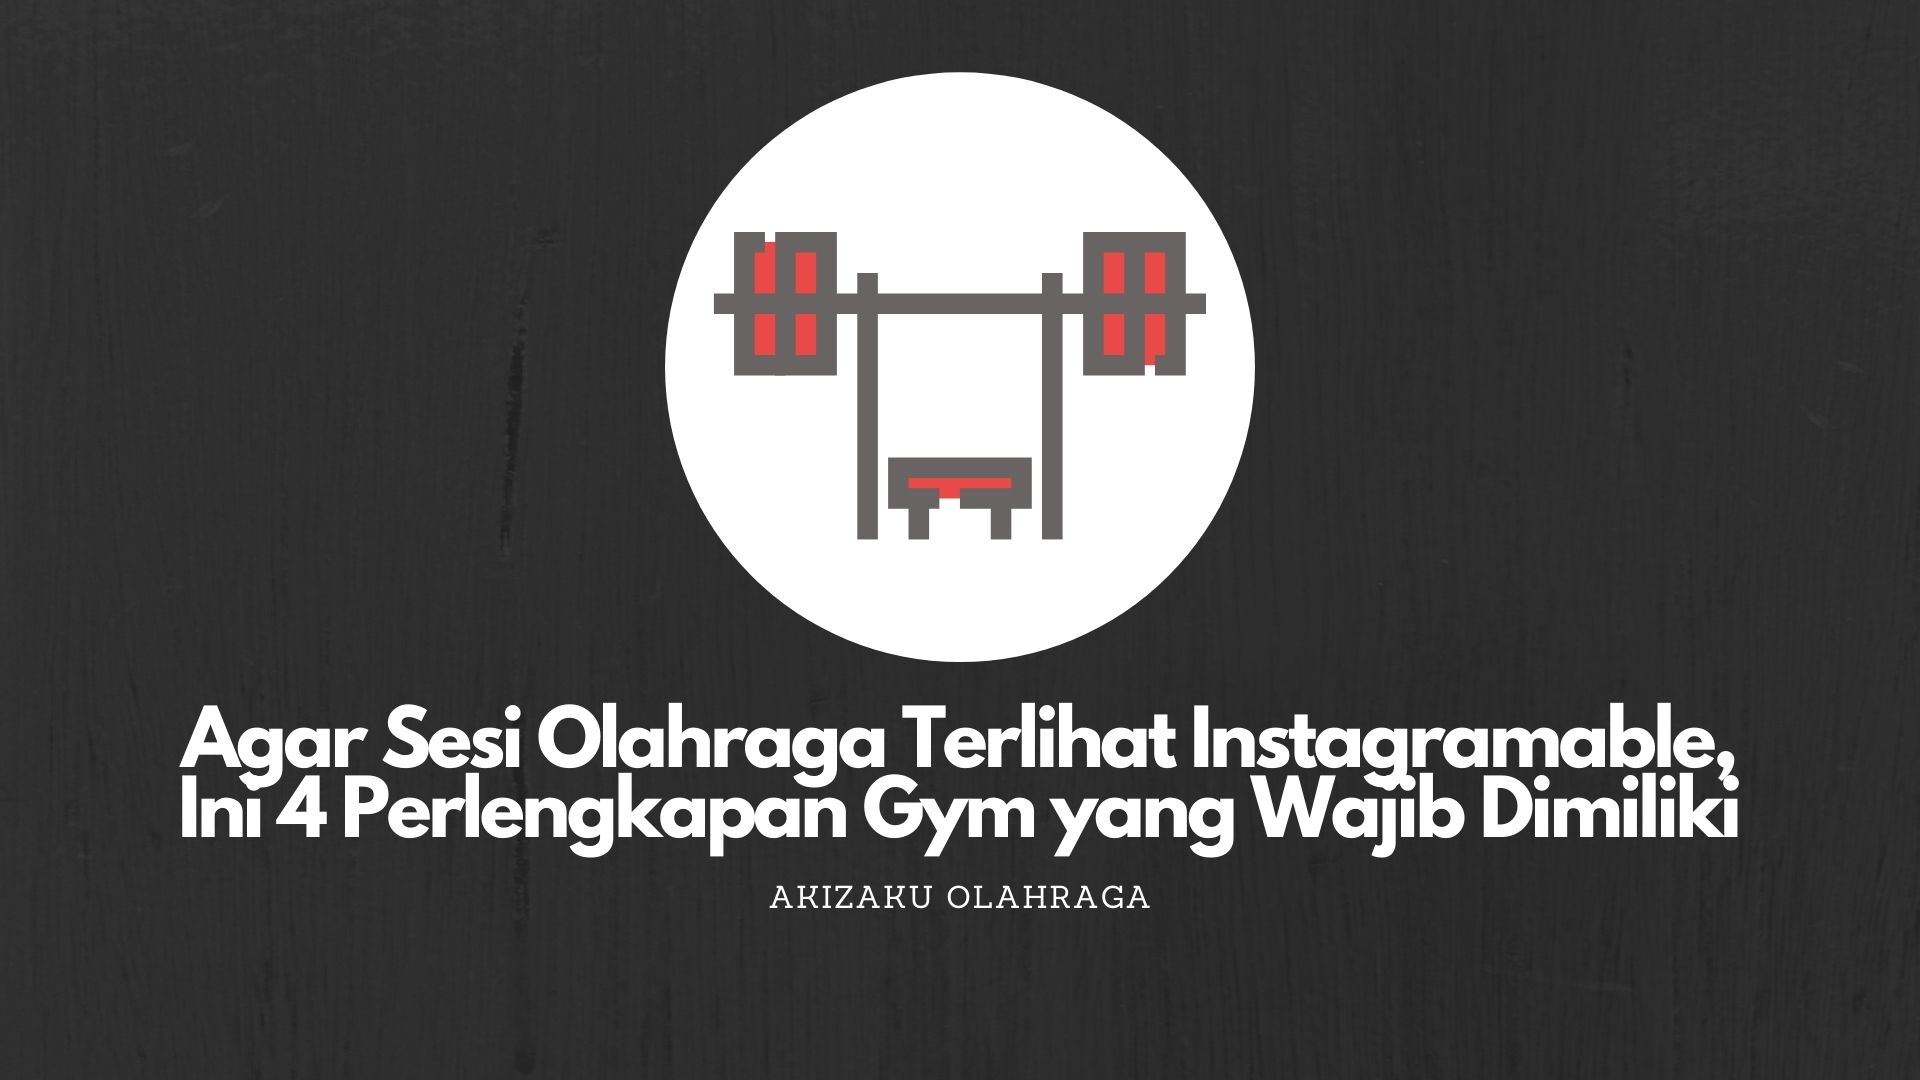  Agar Sesi Olahraga Terlihat Instagramable, 4 Perlengkapan Gym yang Wajib Dimiliki 